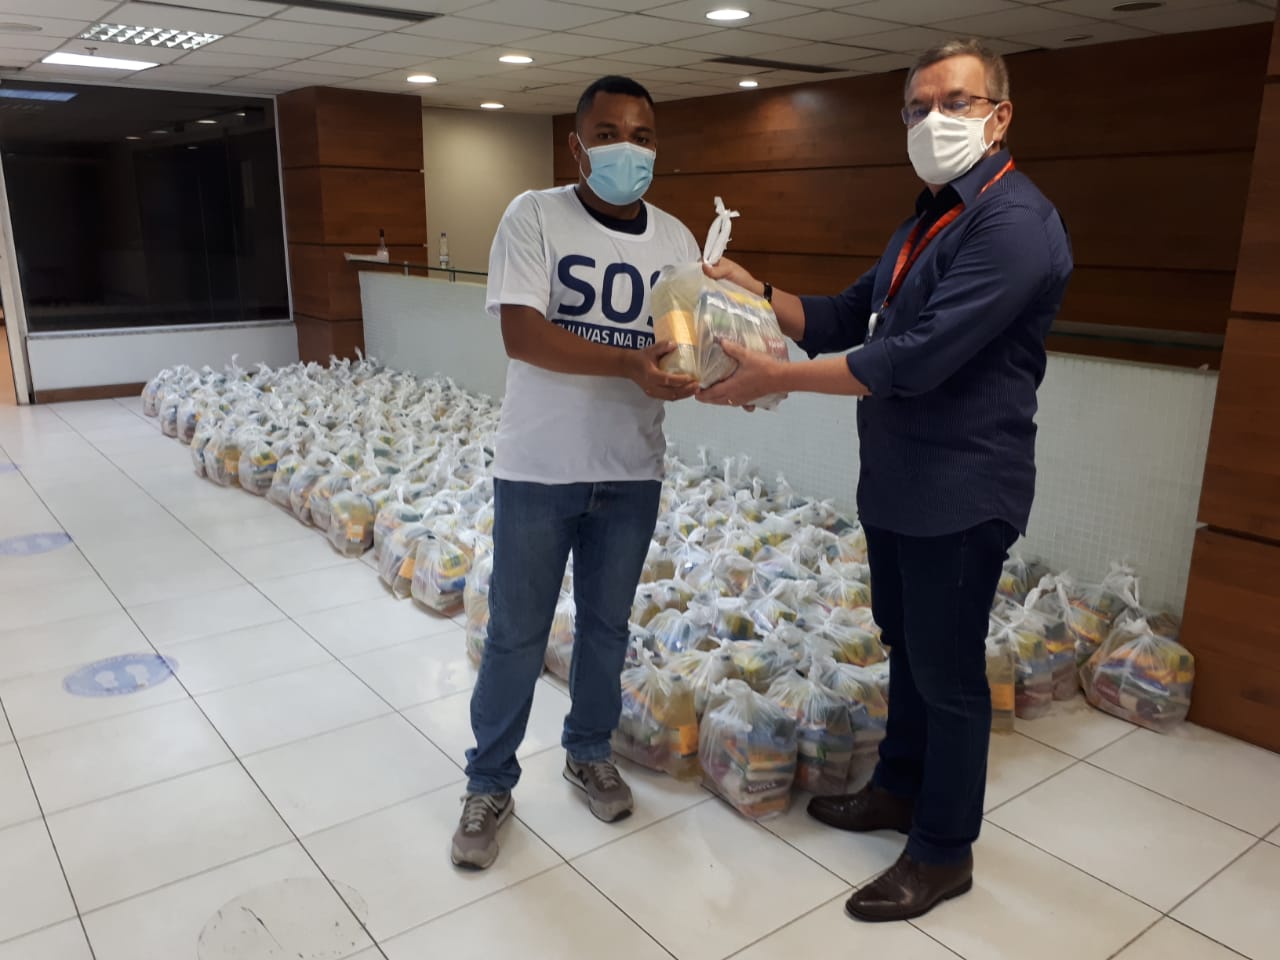 O presidente da Bahia Norte, Guilherme Hupsel, na estraga das 500 cestas básicas ao coordenador da campanha SOS Sul da Bahia, Enderson Araújo.